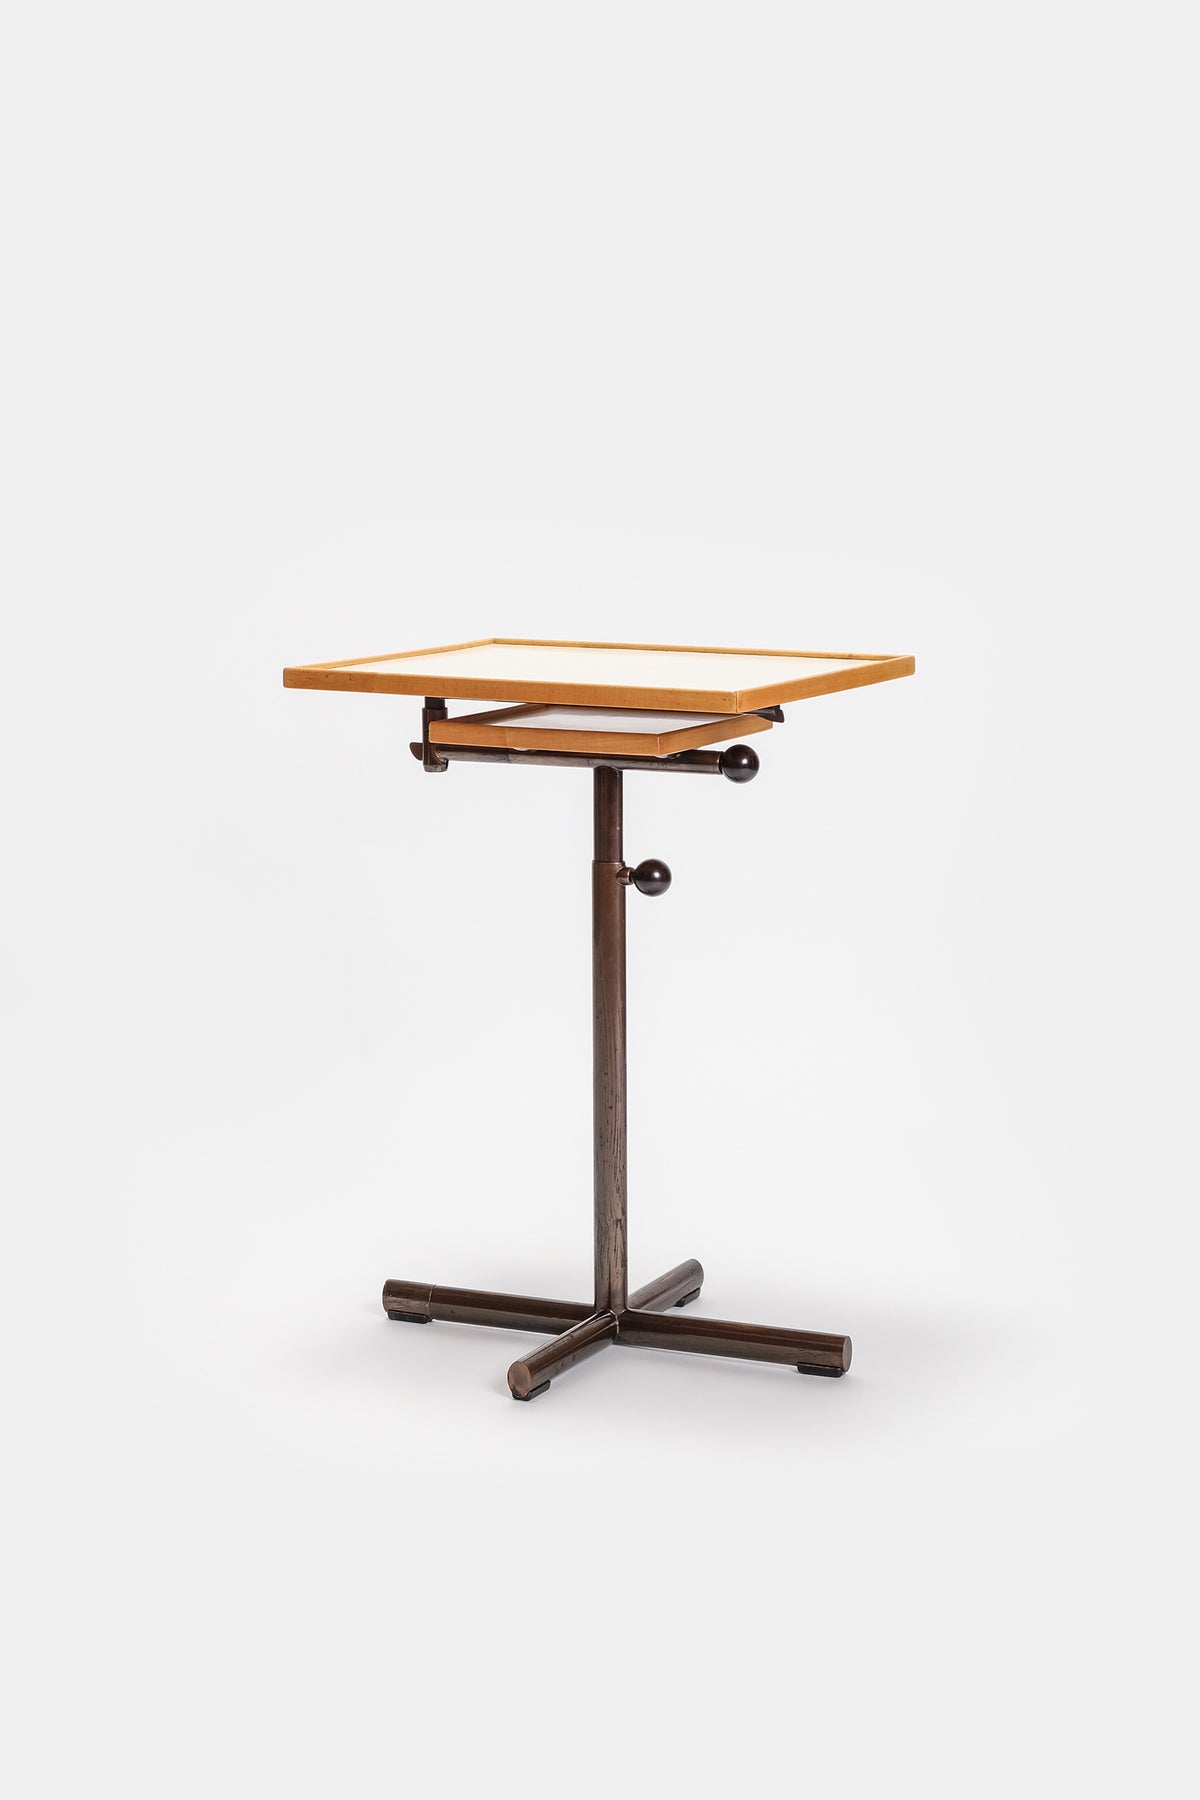 Embru Caruelle Table, Model 2497